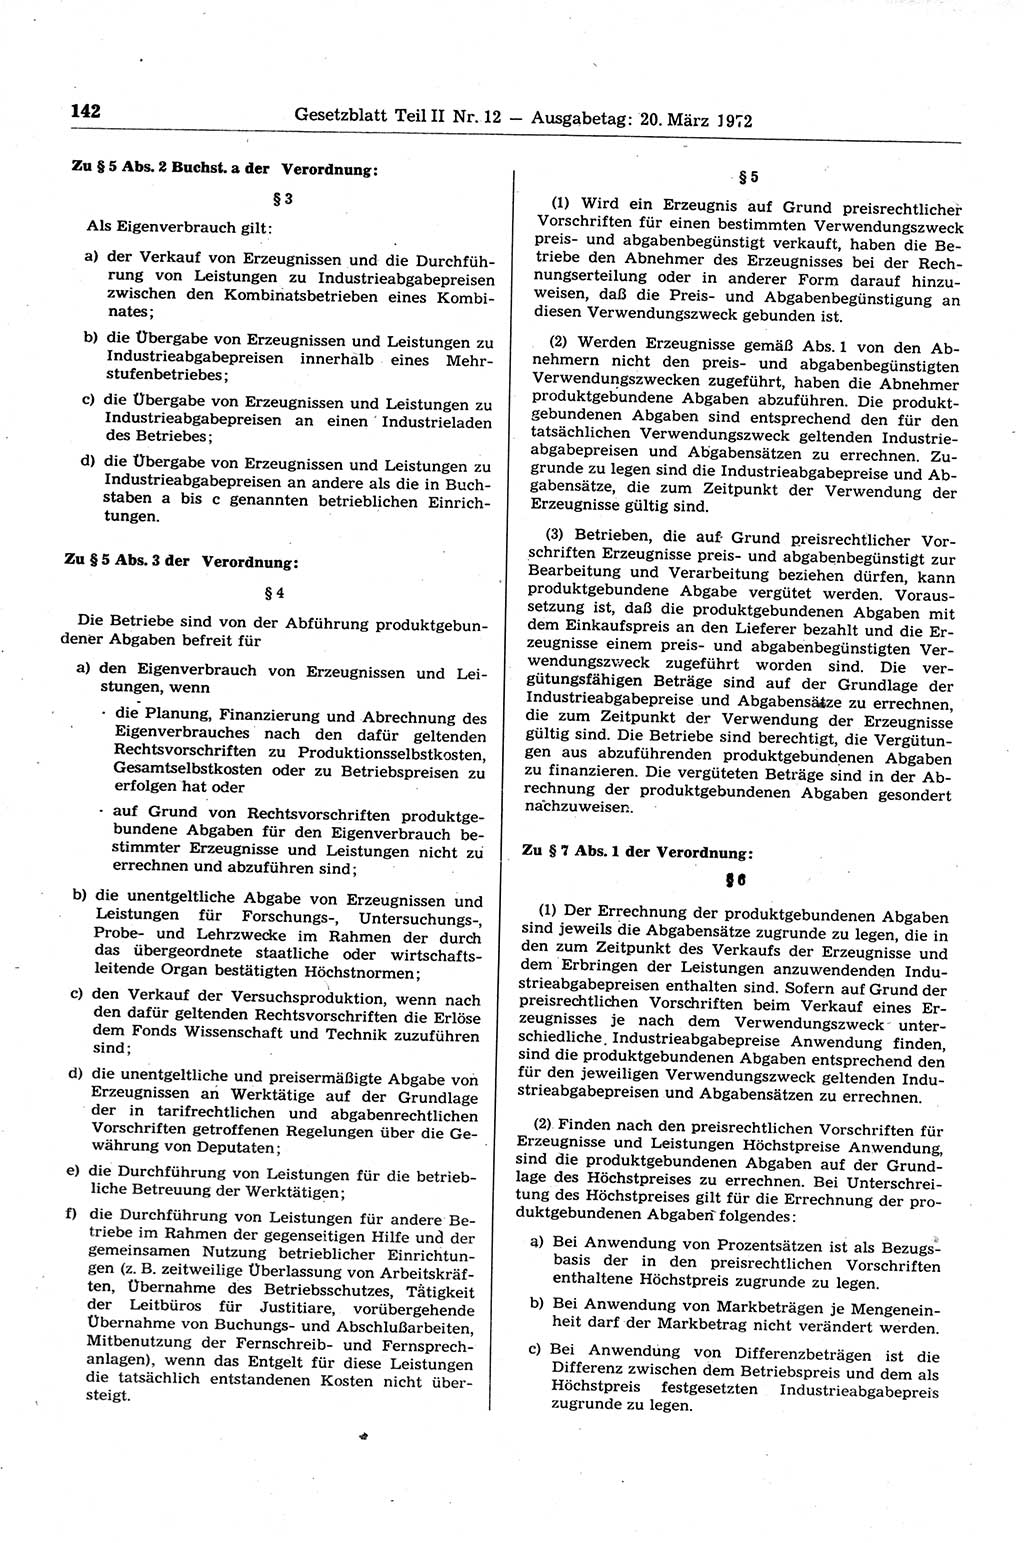 Gesetzblatt (GBl.) der Deutschen Demokratischen Republik (DDR) Teil ⅠⅠ 1972, Seite 142 (GBl. DDR ⅠⅠ 1972, S. 142)